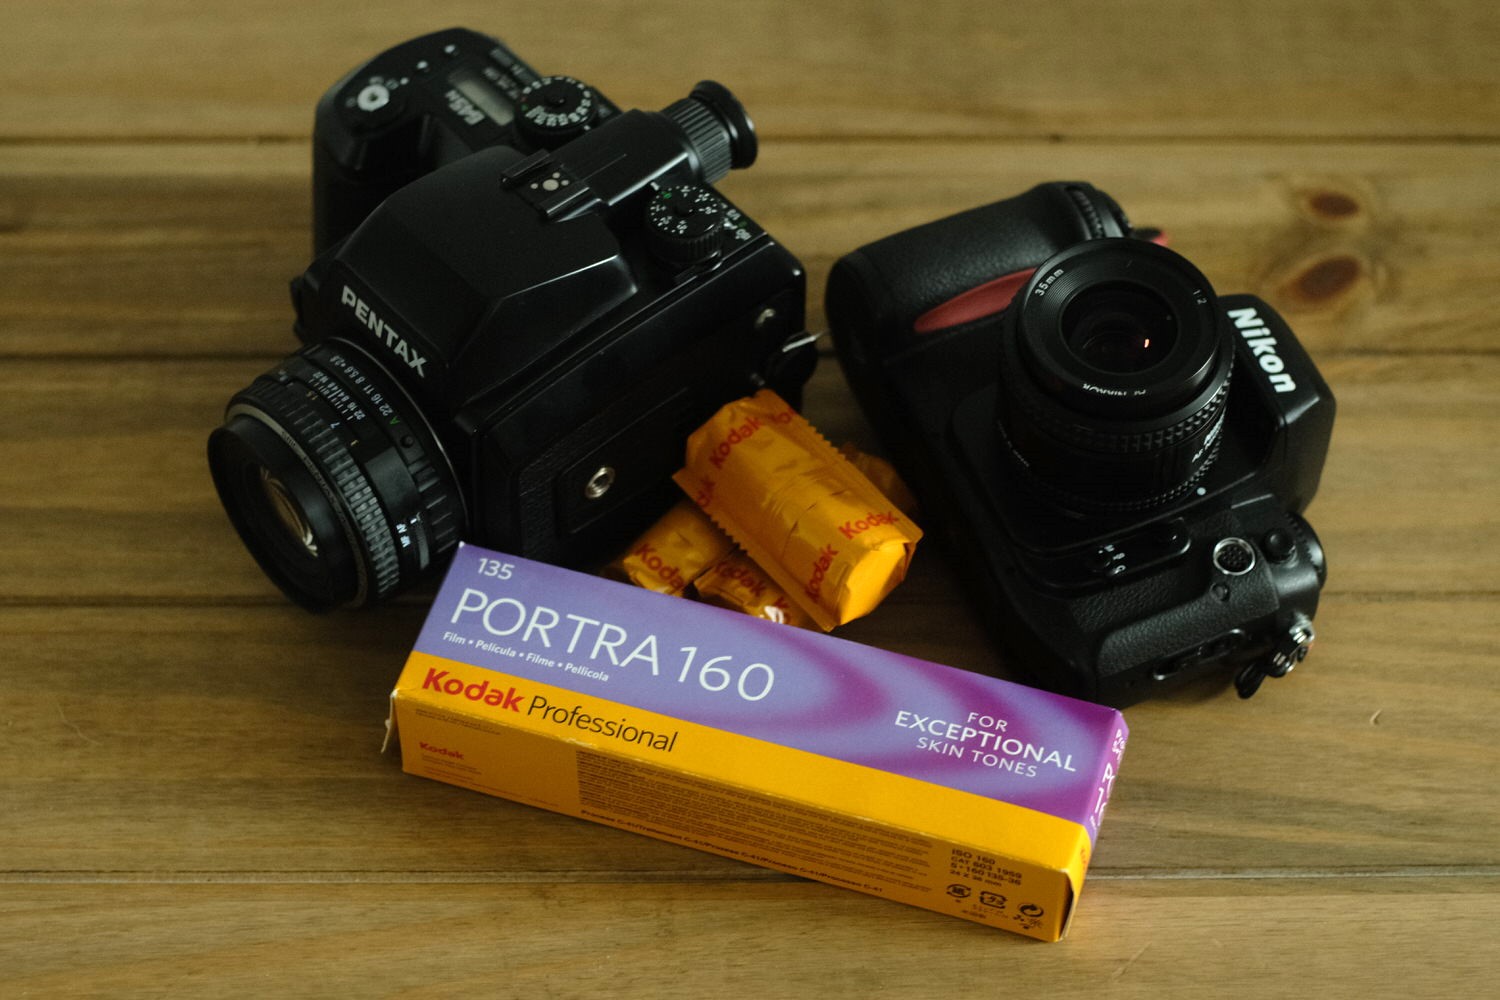 Kodak Portra 160 35mm